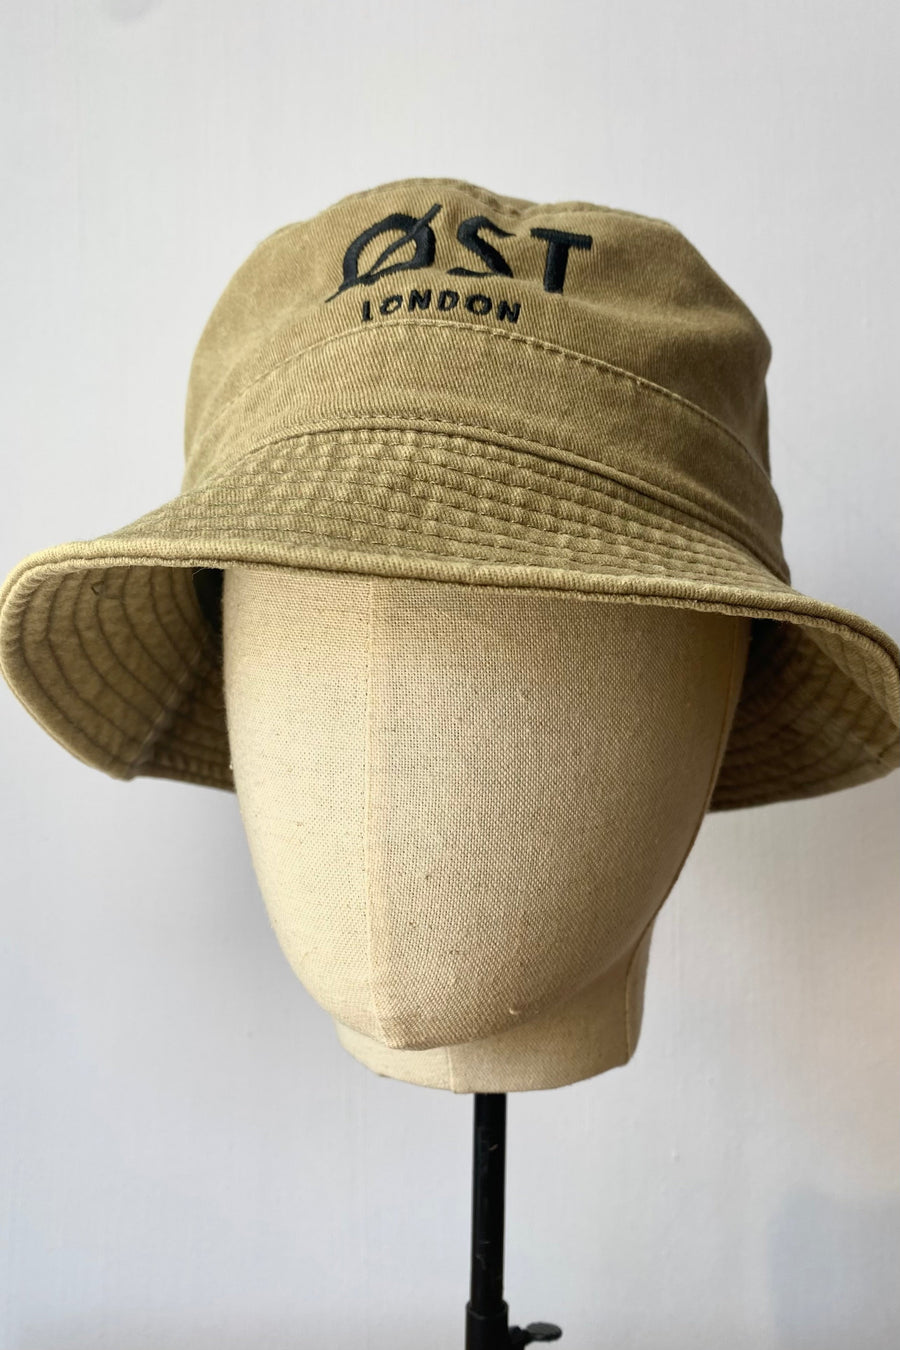 Øst London Bucket Hat